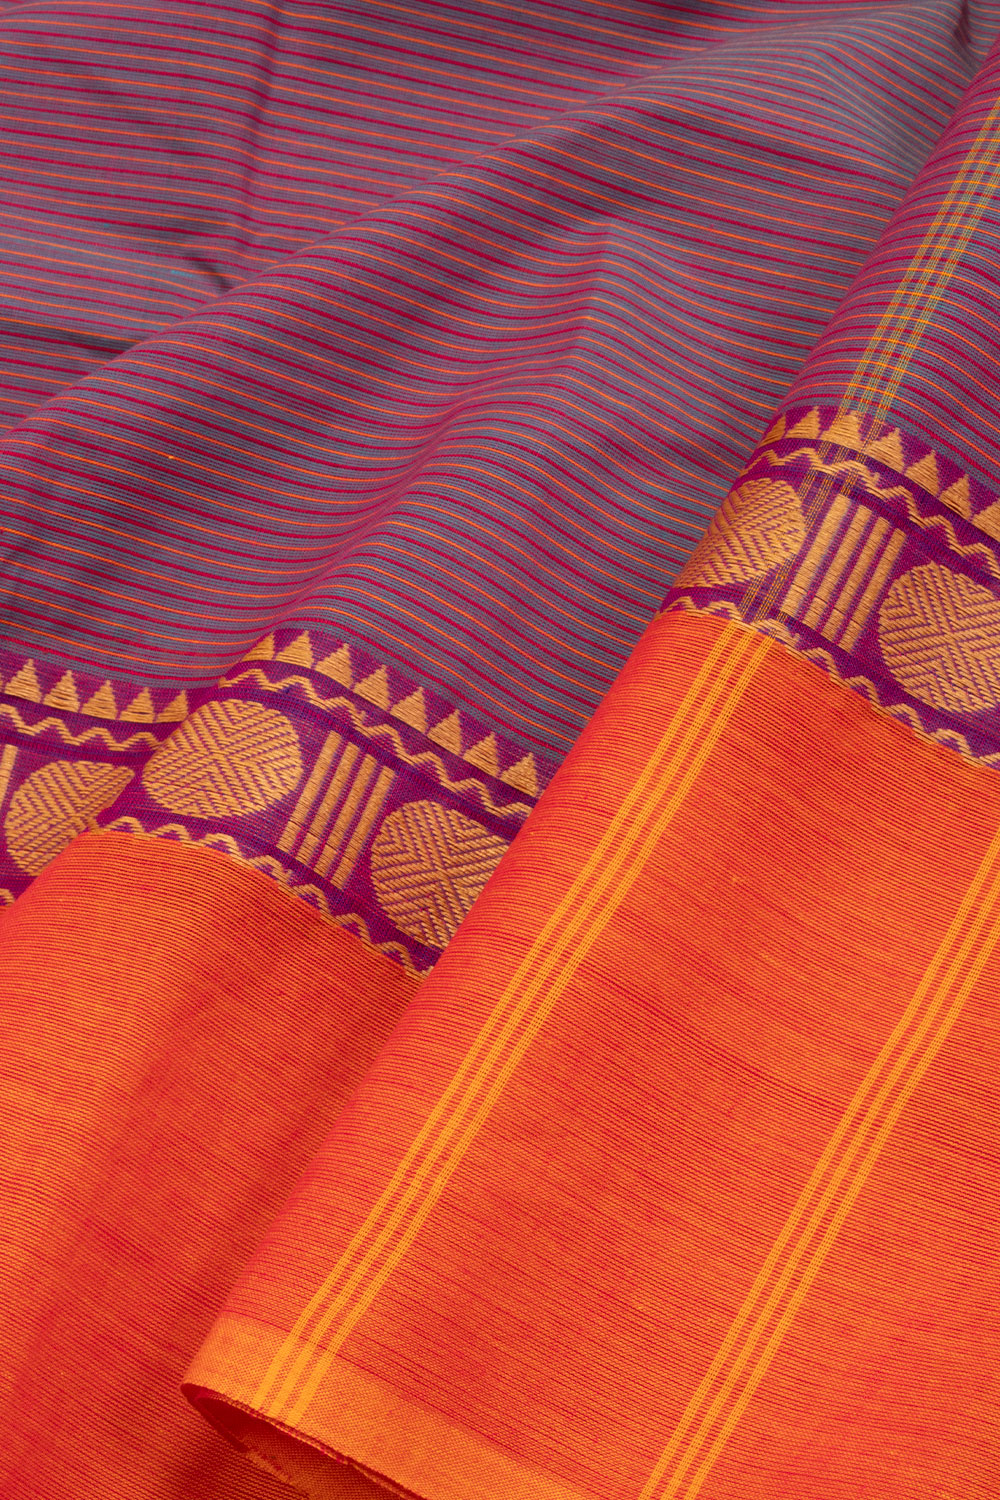 Dual Tone Purple Handloom Chettinad Cotton Saree 10070084 - Avishya